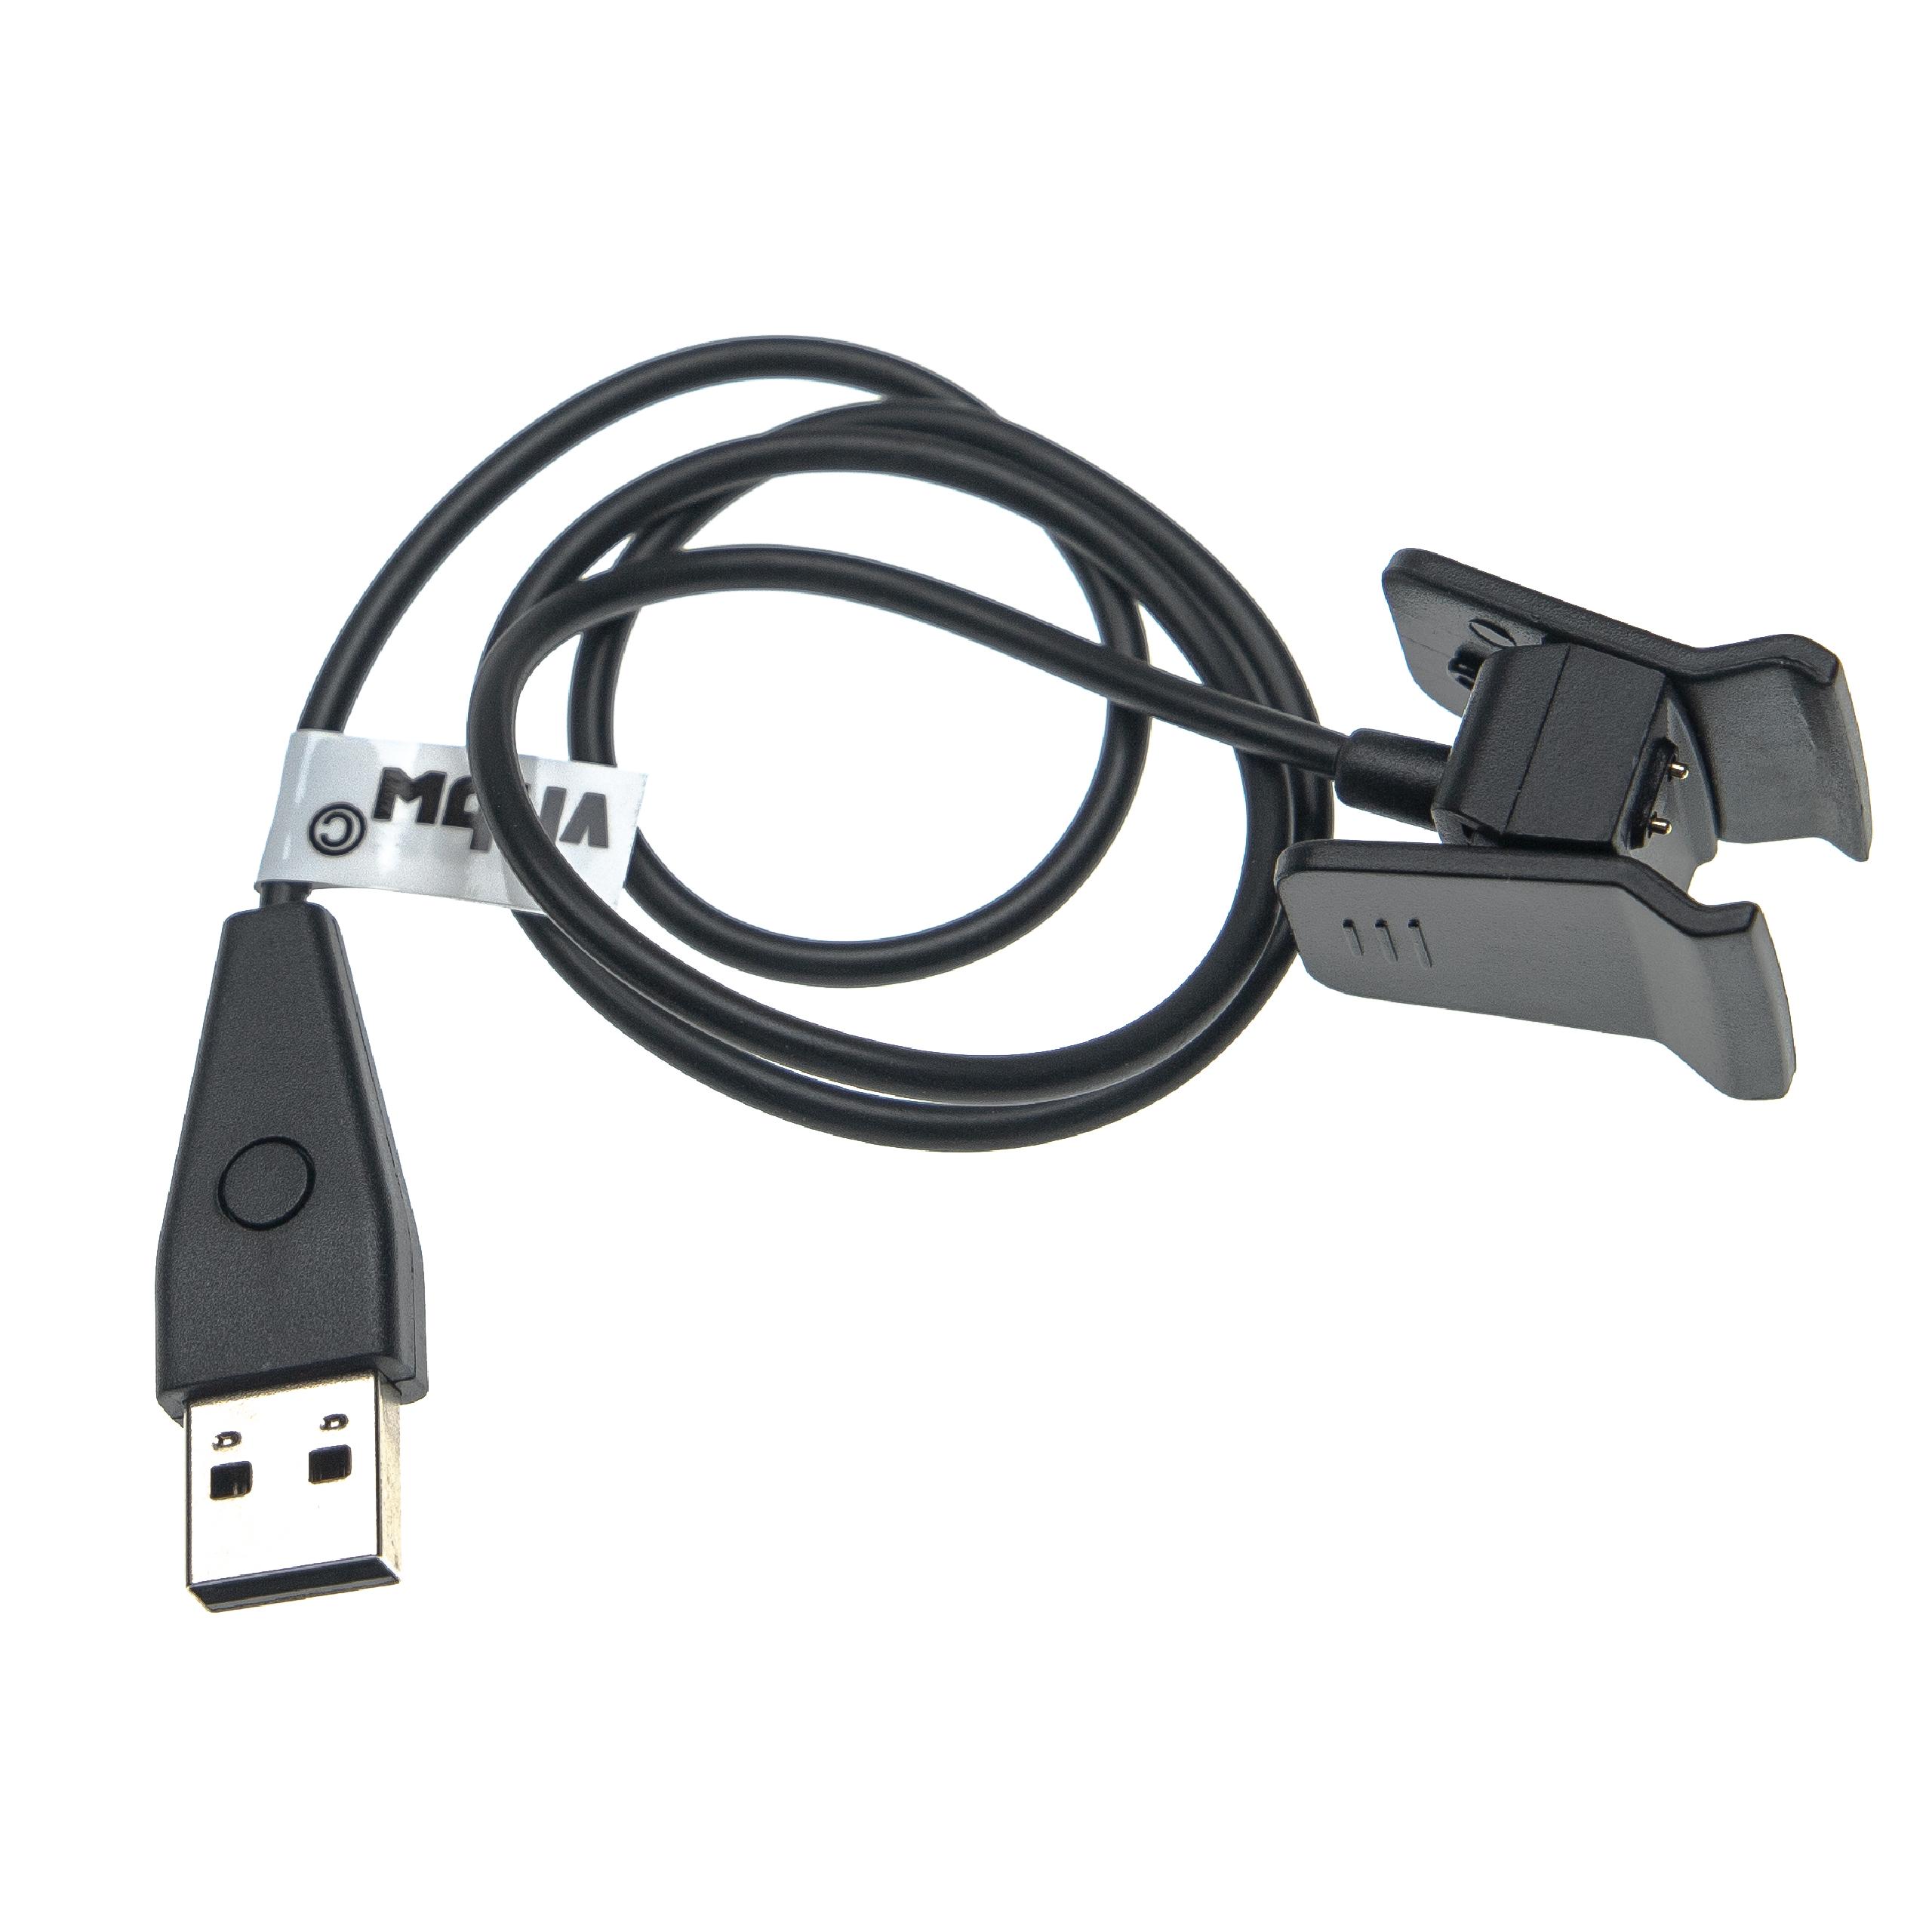 Cable de carga USB para smartwatch Fitbit Alta HR - negro con función reset 55 cm